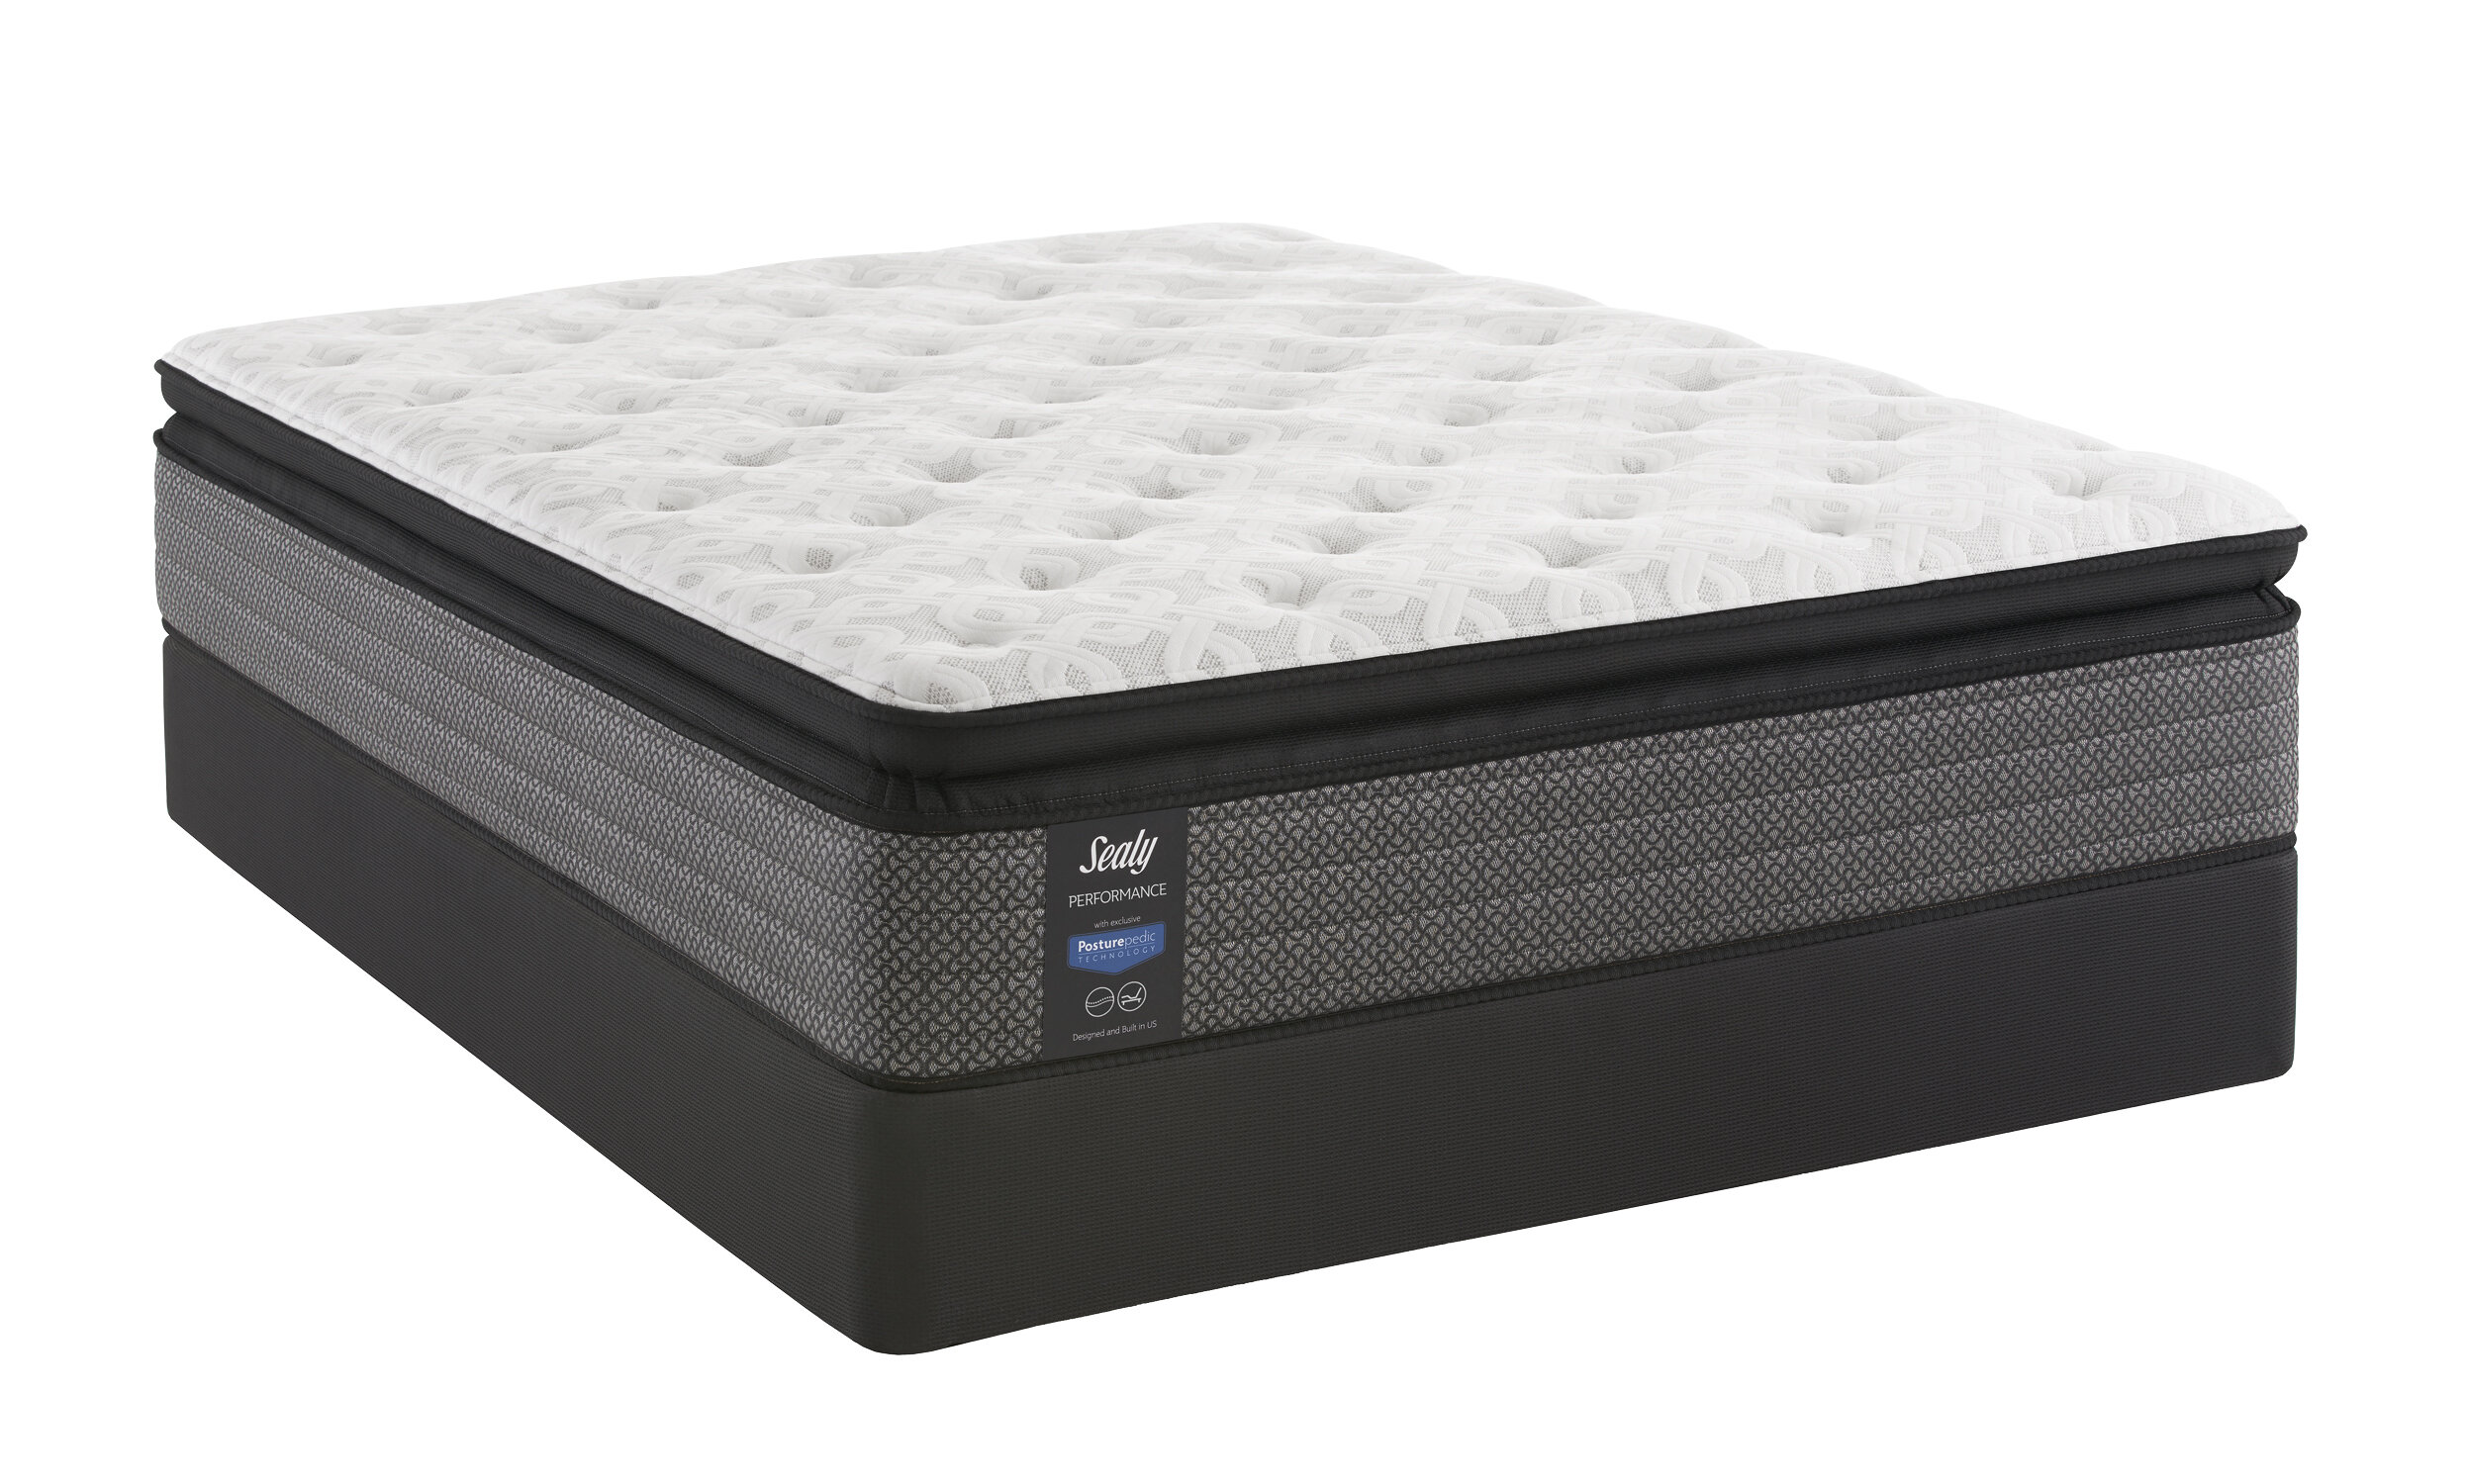 softex top loft mattress pad